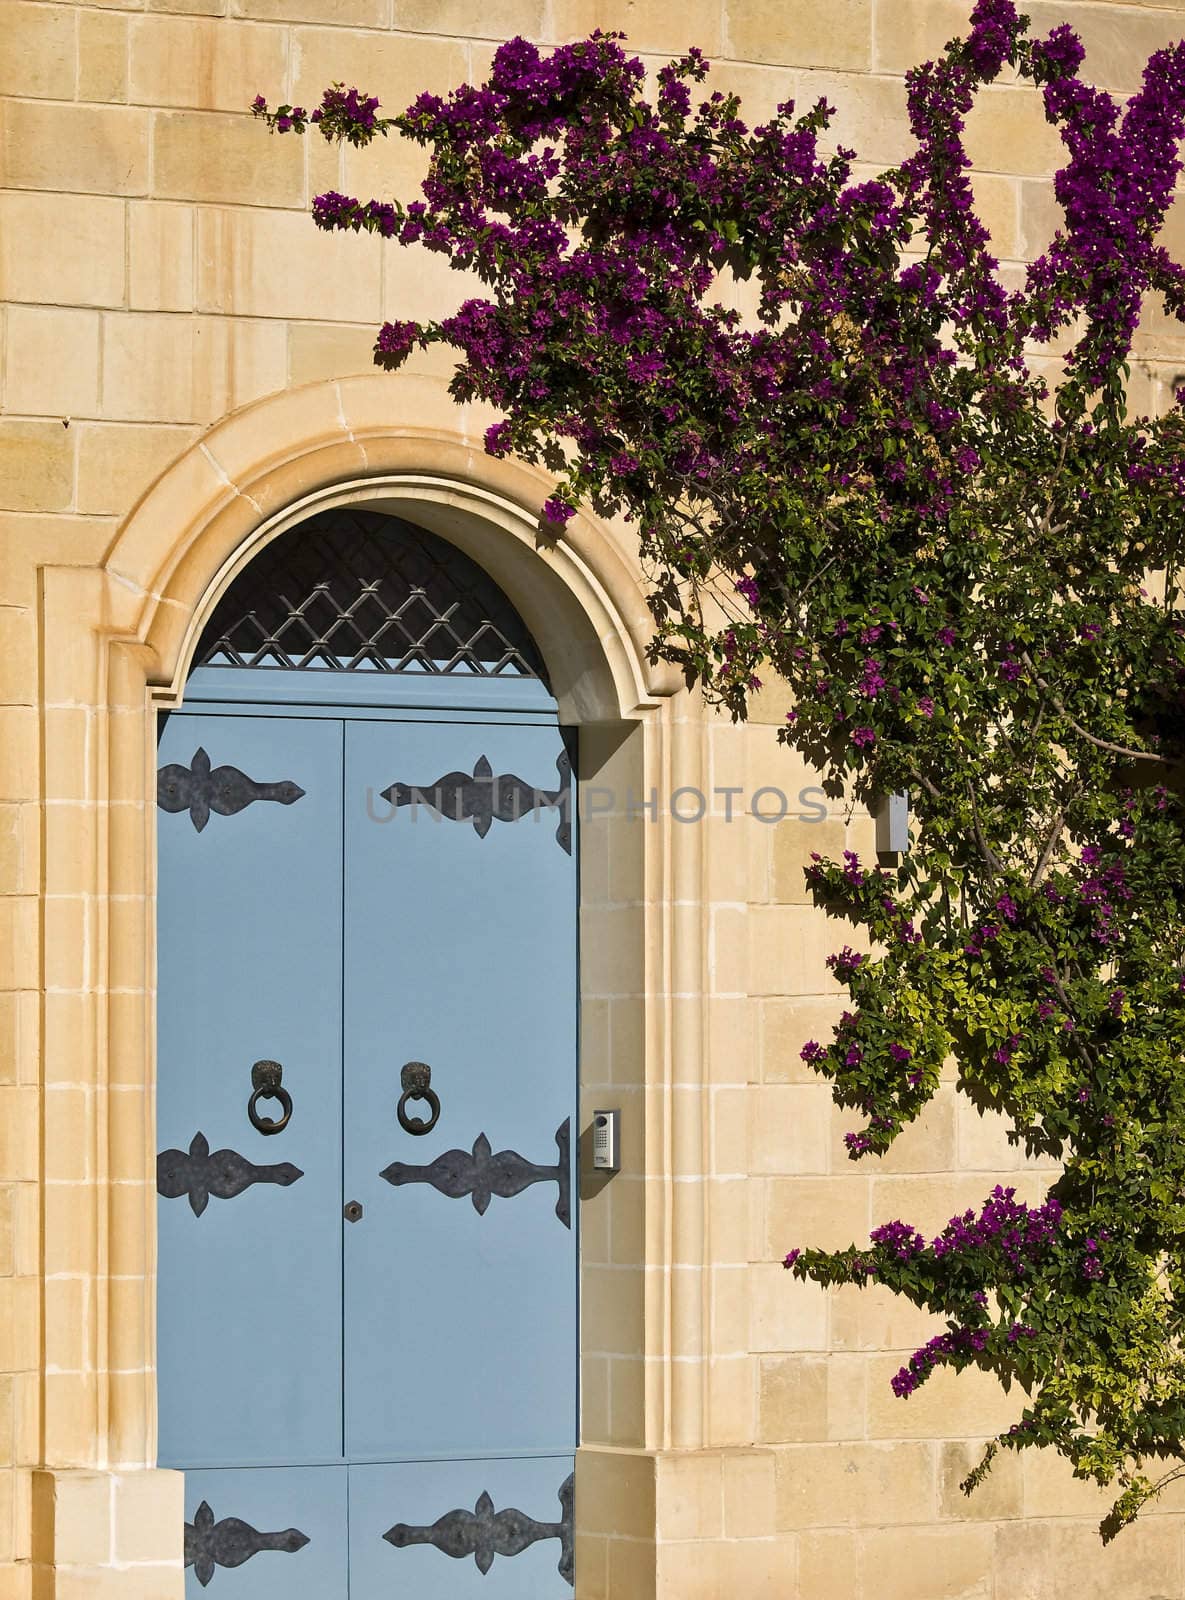 Mdina Door by PhotoWorks